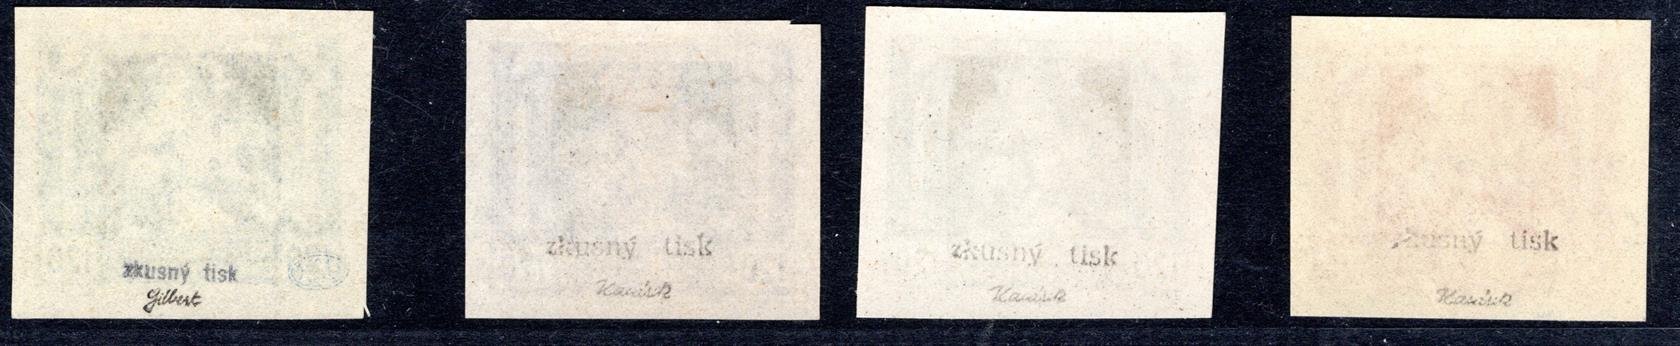 32 ZT ; 4 x zkusmý tisk - ( fialový odstín nálepka, jinak vše xx )  ; zk. Karásek/ Gilbert 